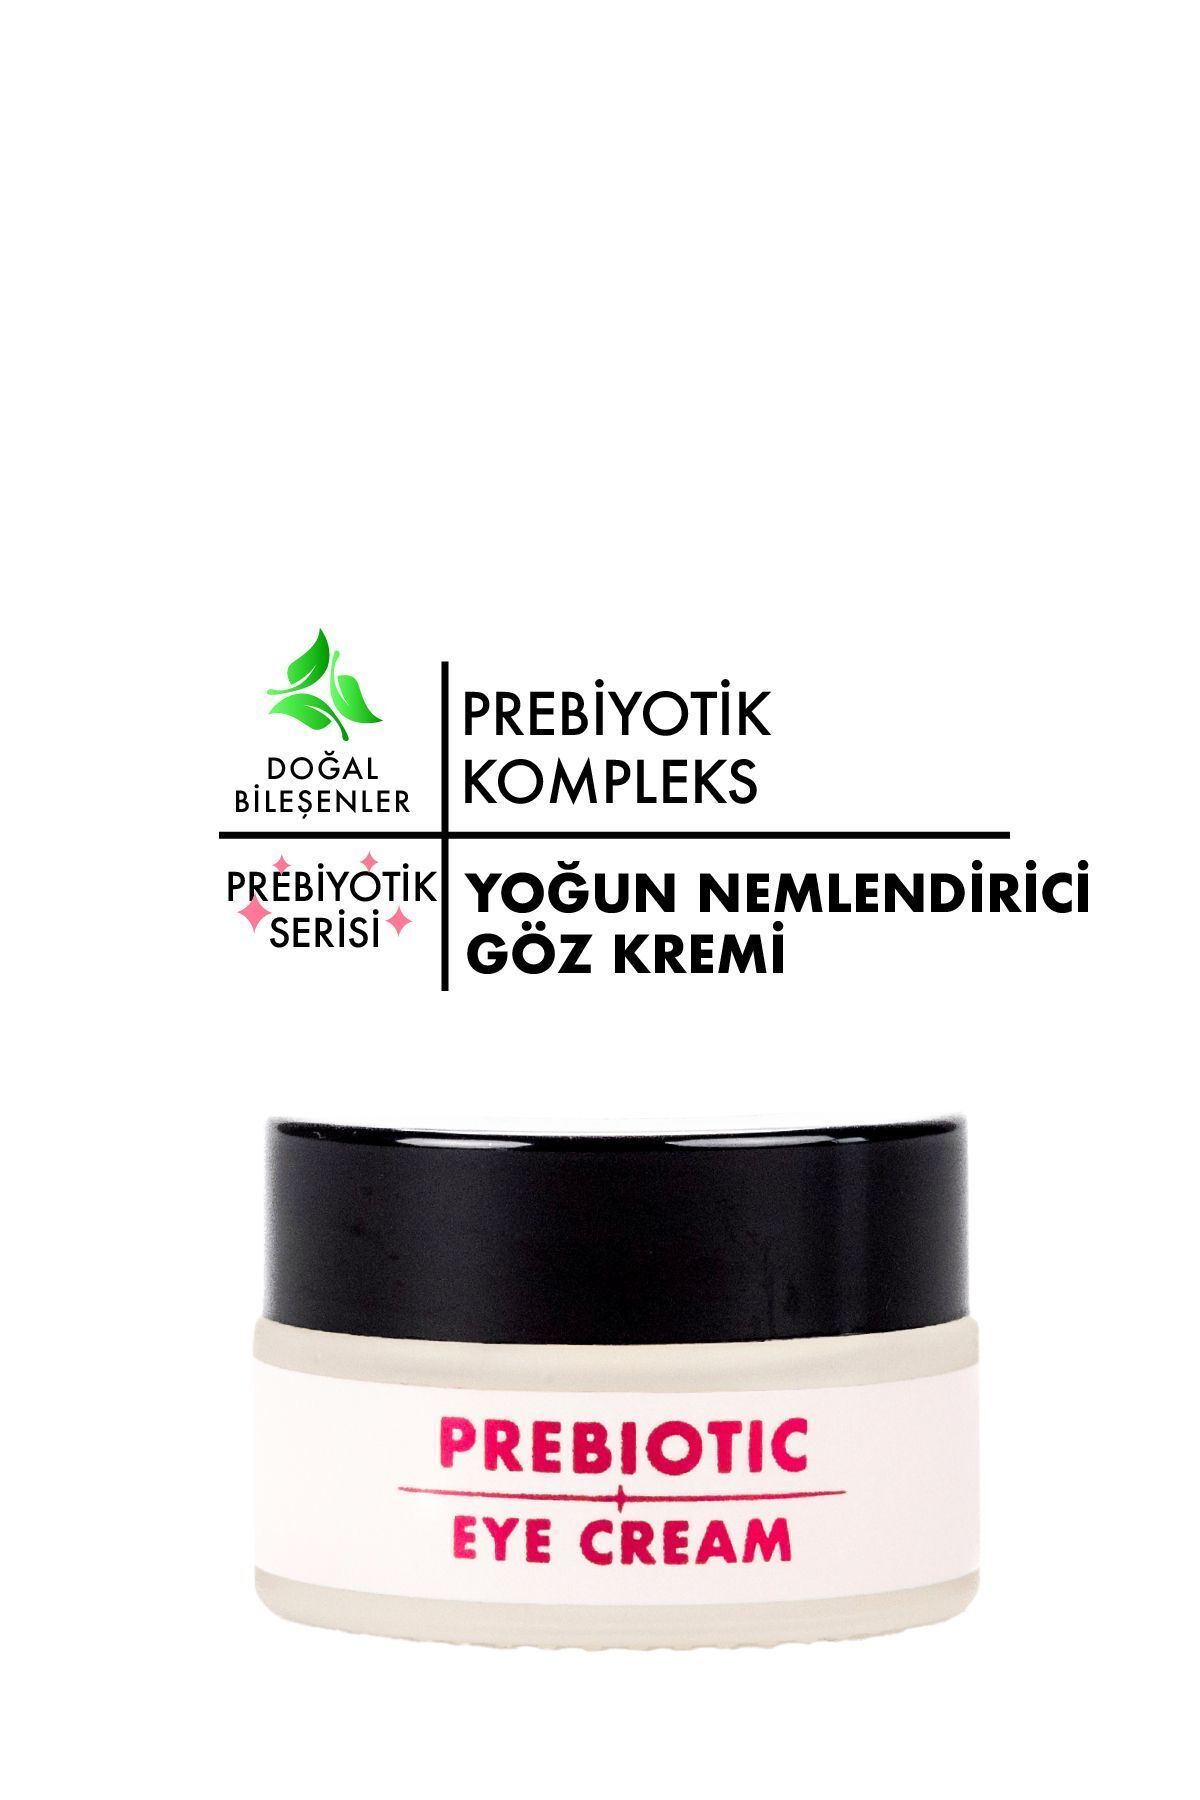 Polente Natural Prebiotic Eye Cream Yoğun Nemlendirici Etki Sunan Prebiyotik Göz Kremi (20 ML)